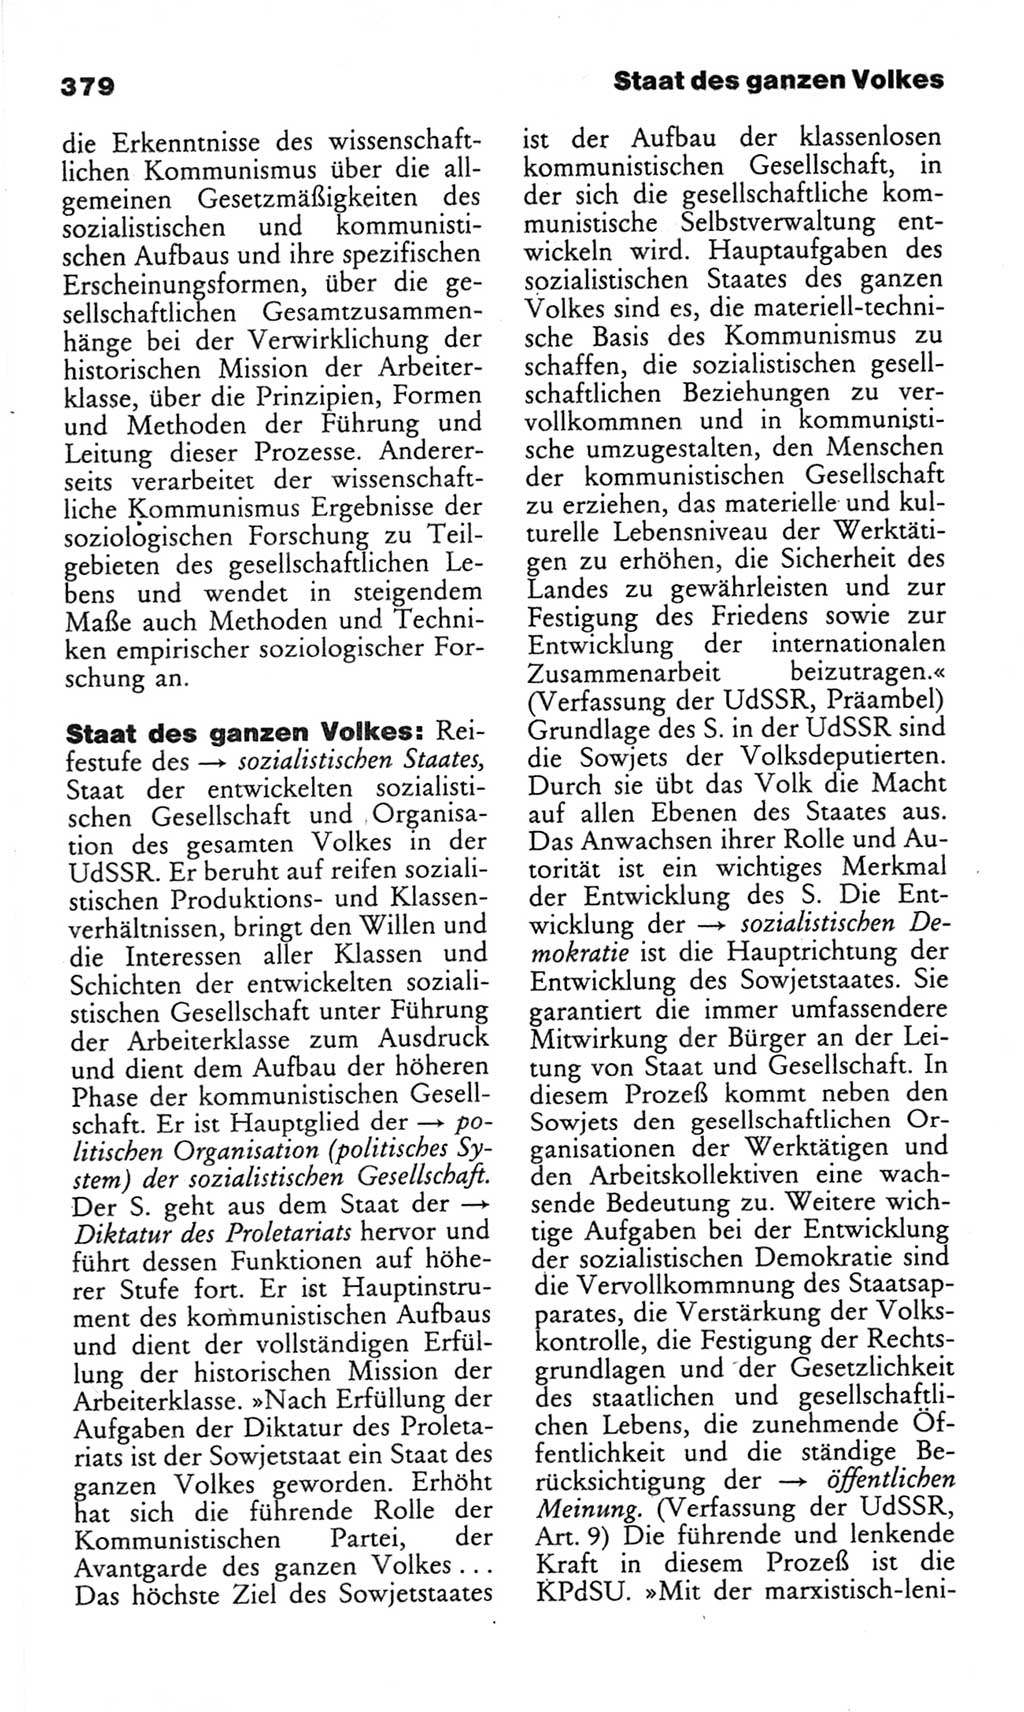 Wörterbuch des wissenschaftlichen Kommunismus [Deutsche Demokratische Republik (DDR)] 1982, Seite 379 (Wb. wiss. Komm. DDR 1982, S. 379)